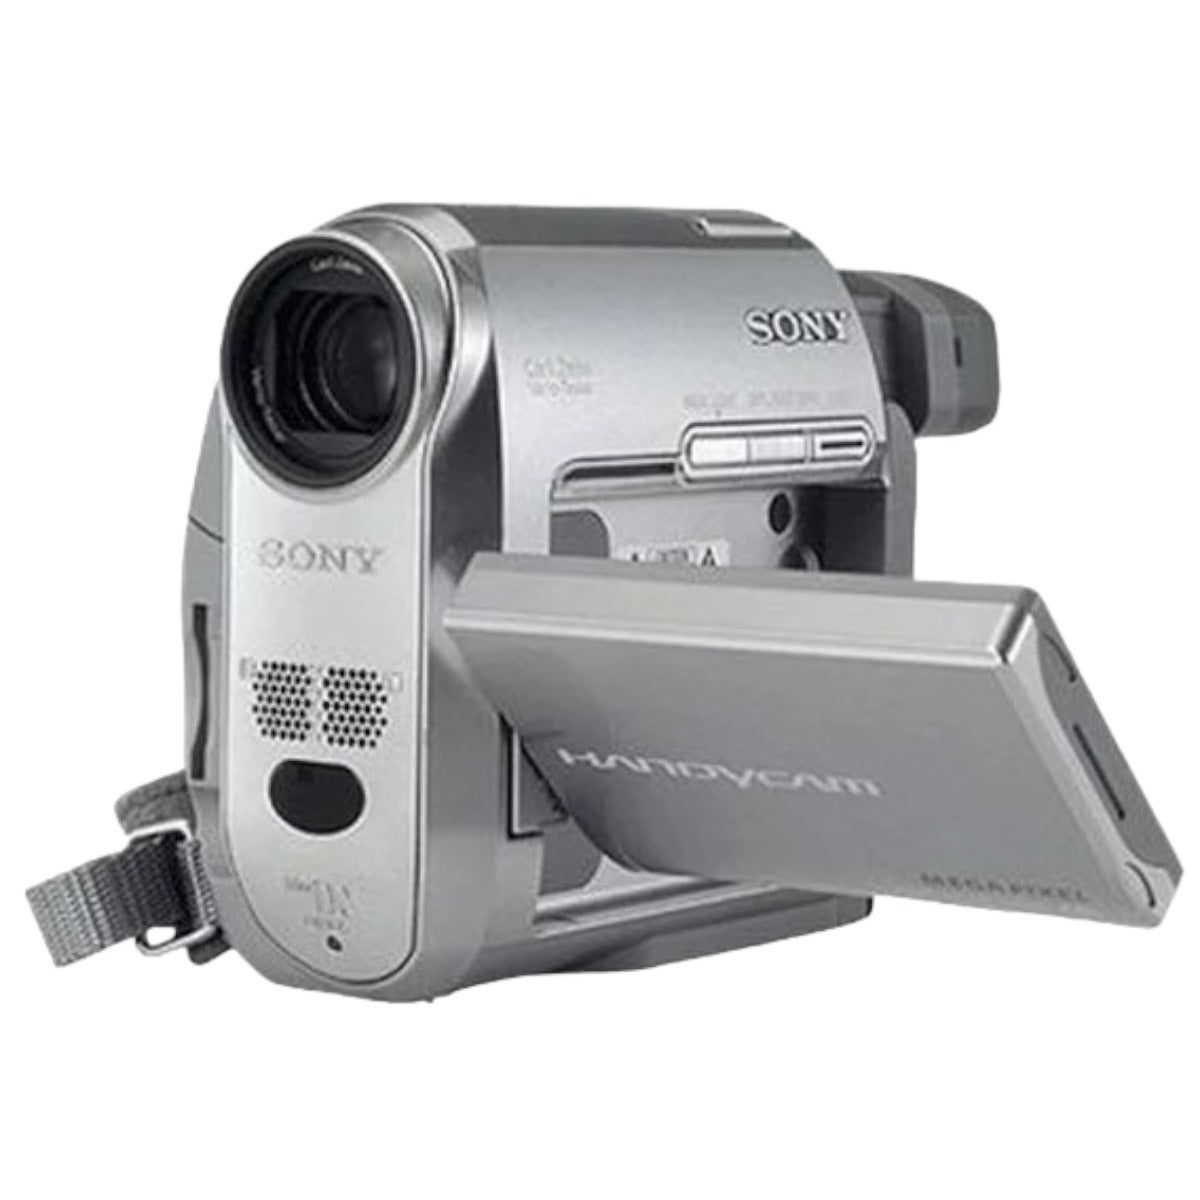 Sony Handycam DCR-HC40 Mini DV Camcorder – TekRevolt